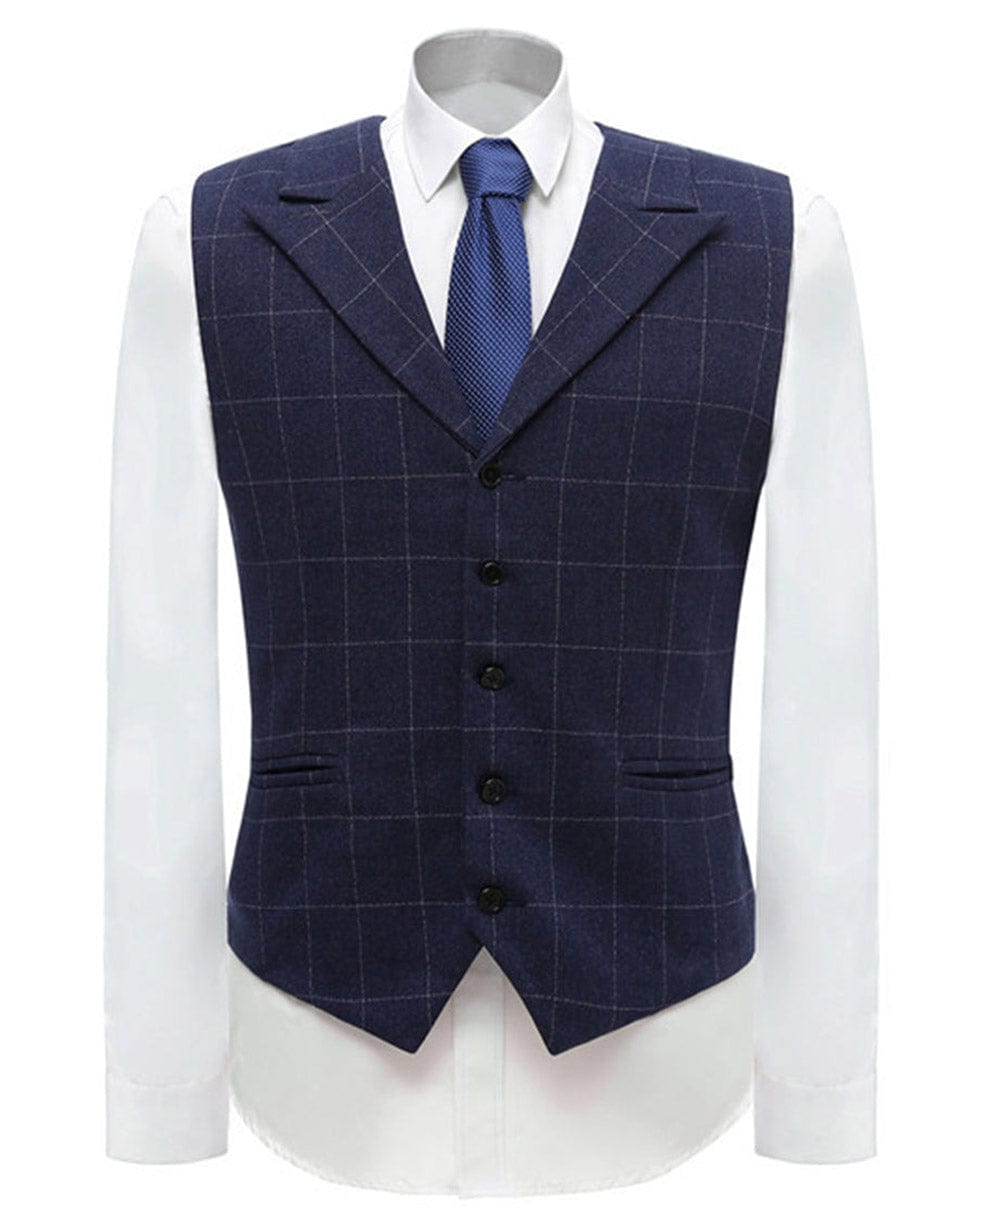 aesido Fashion Men's Suit Vest Plaid Peak Lapel Waistcoat